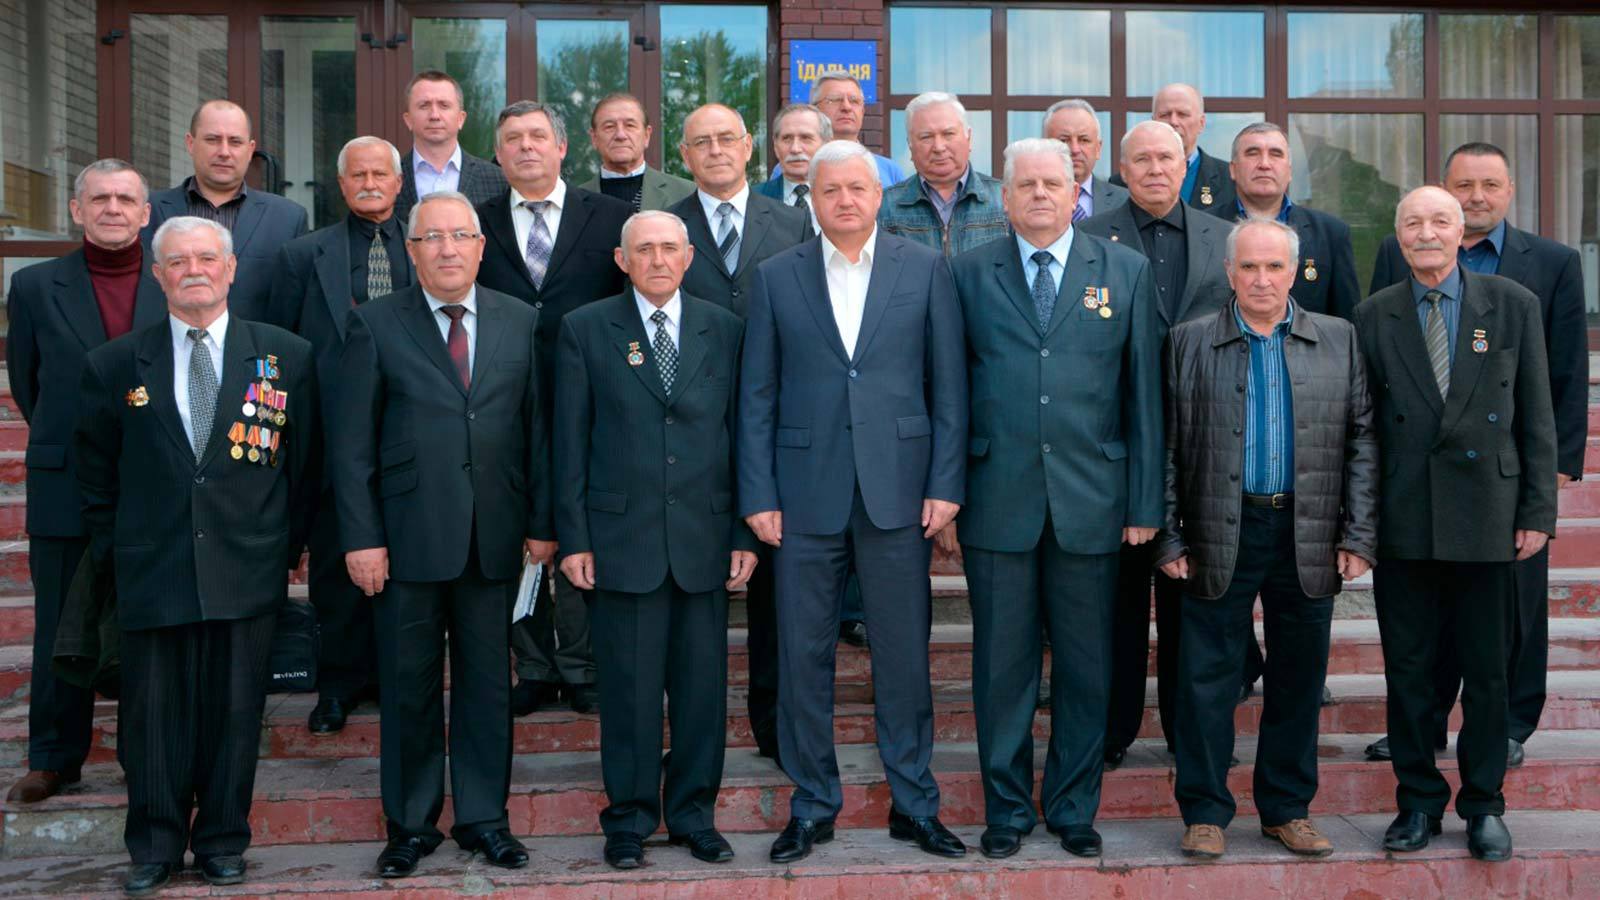 Завершили захід переглядом документального фільму «Чорнобиль наш довічний біль».